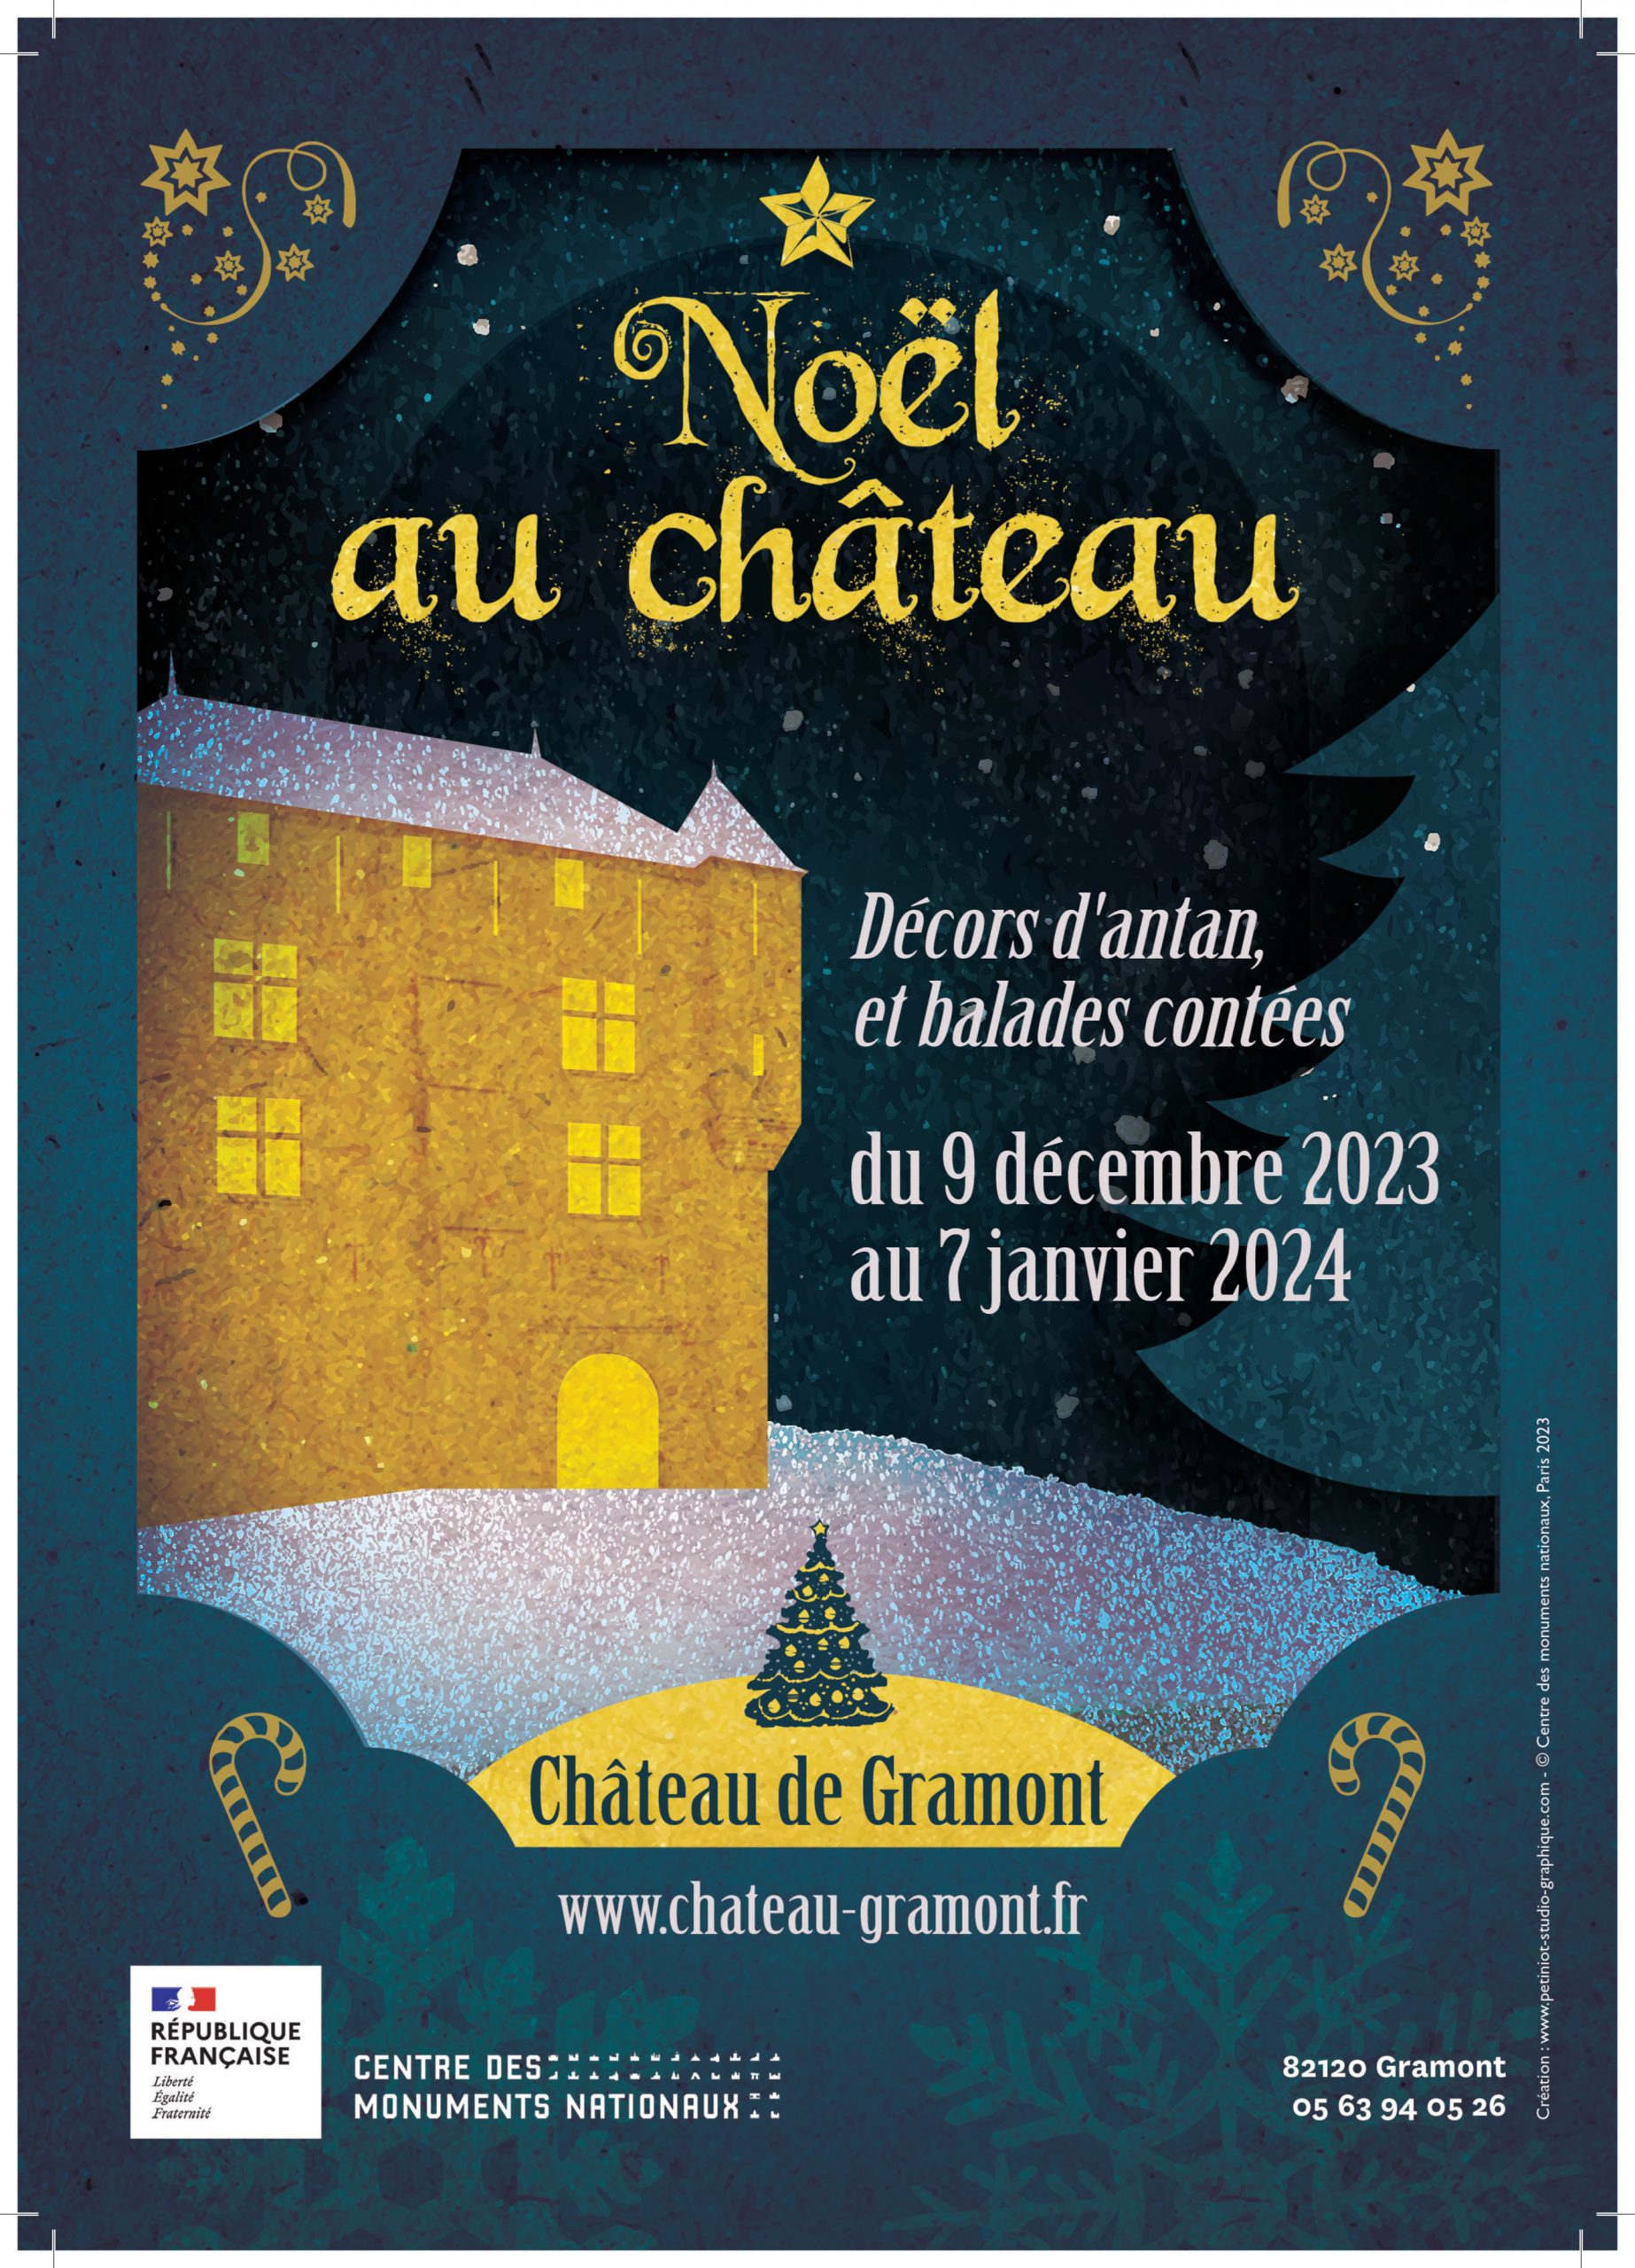 Noël au château de Gramont